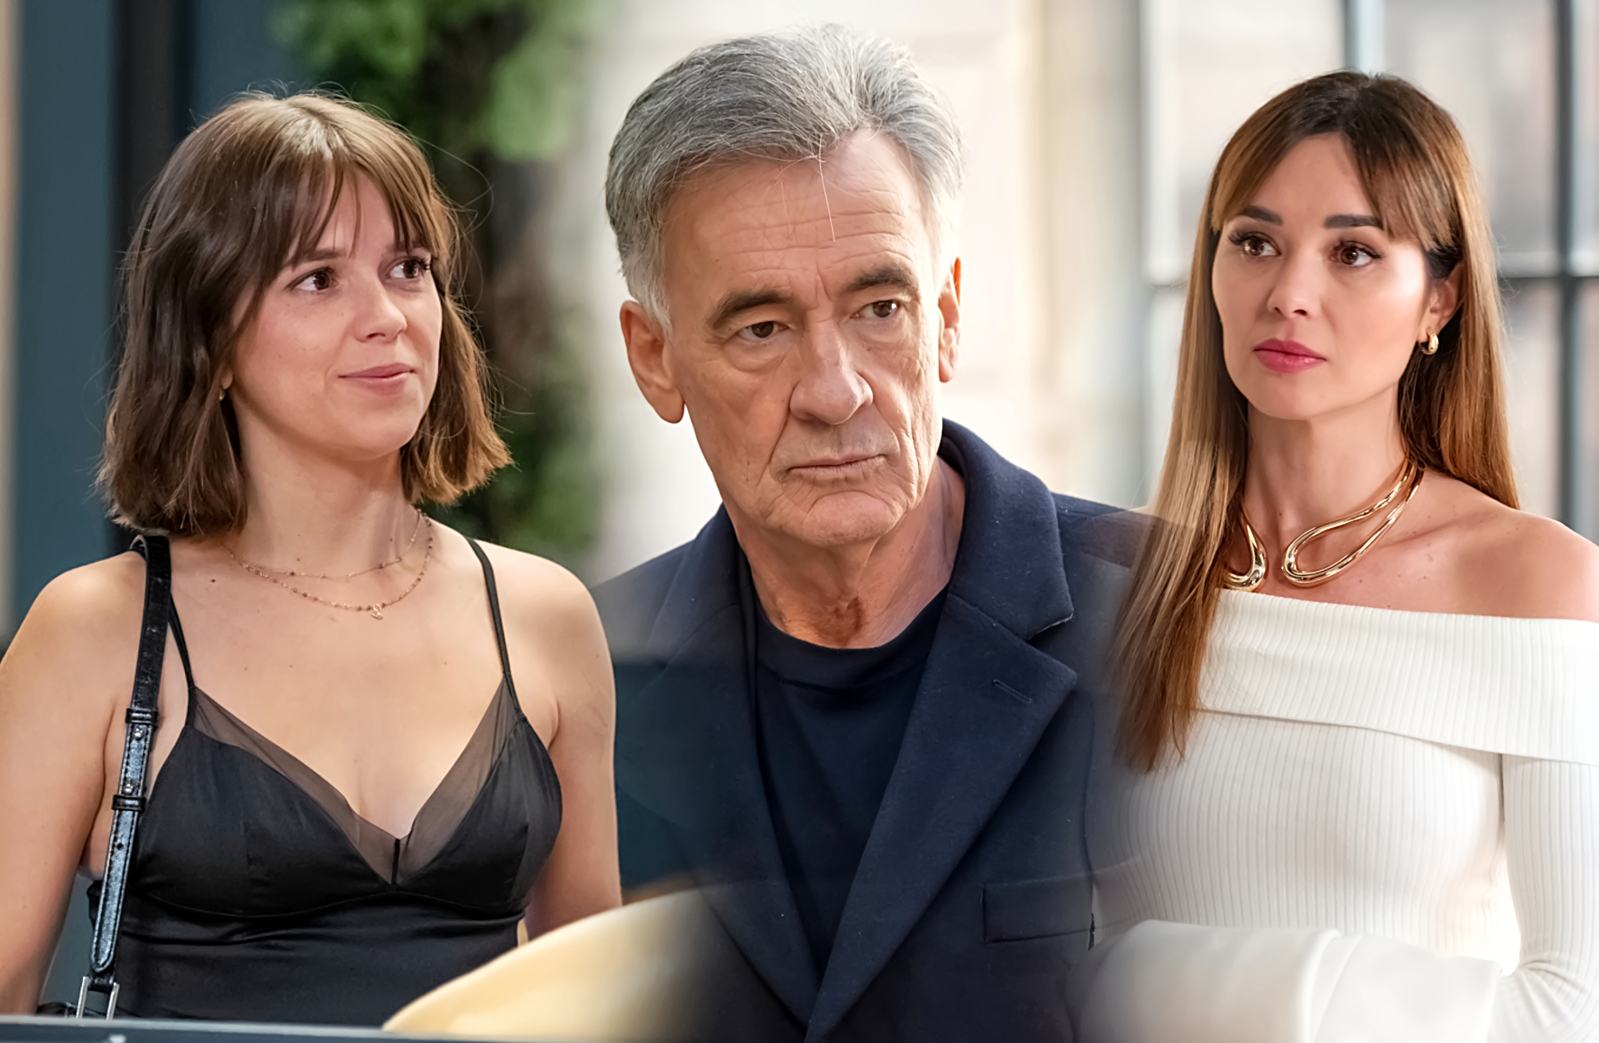 Los enredos amorosos son una constante para Luz, Rafael y Marta en la segunda temporada de 4 estrellas